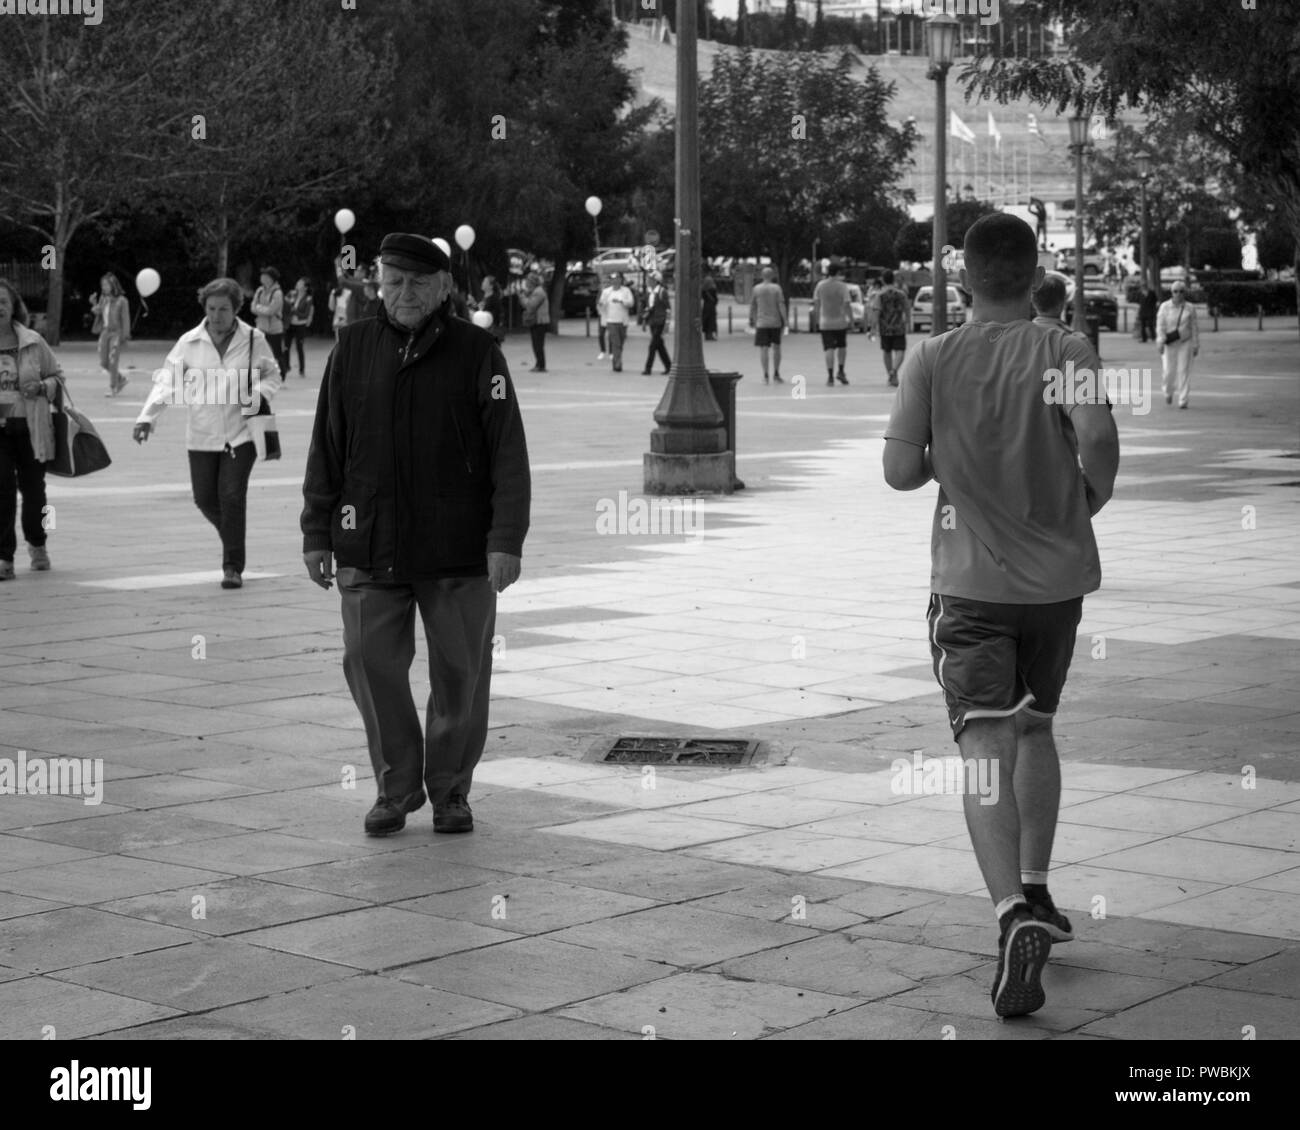 Un jeune homme est en marche vers le vieux Stade Olympique, un ancien est en train de renoncer à elle, Athènes Grèce. Banque D'Images